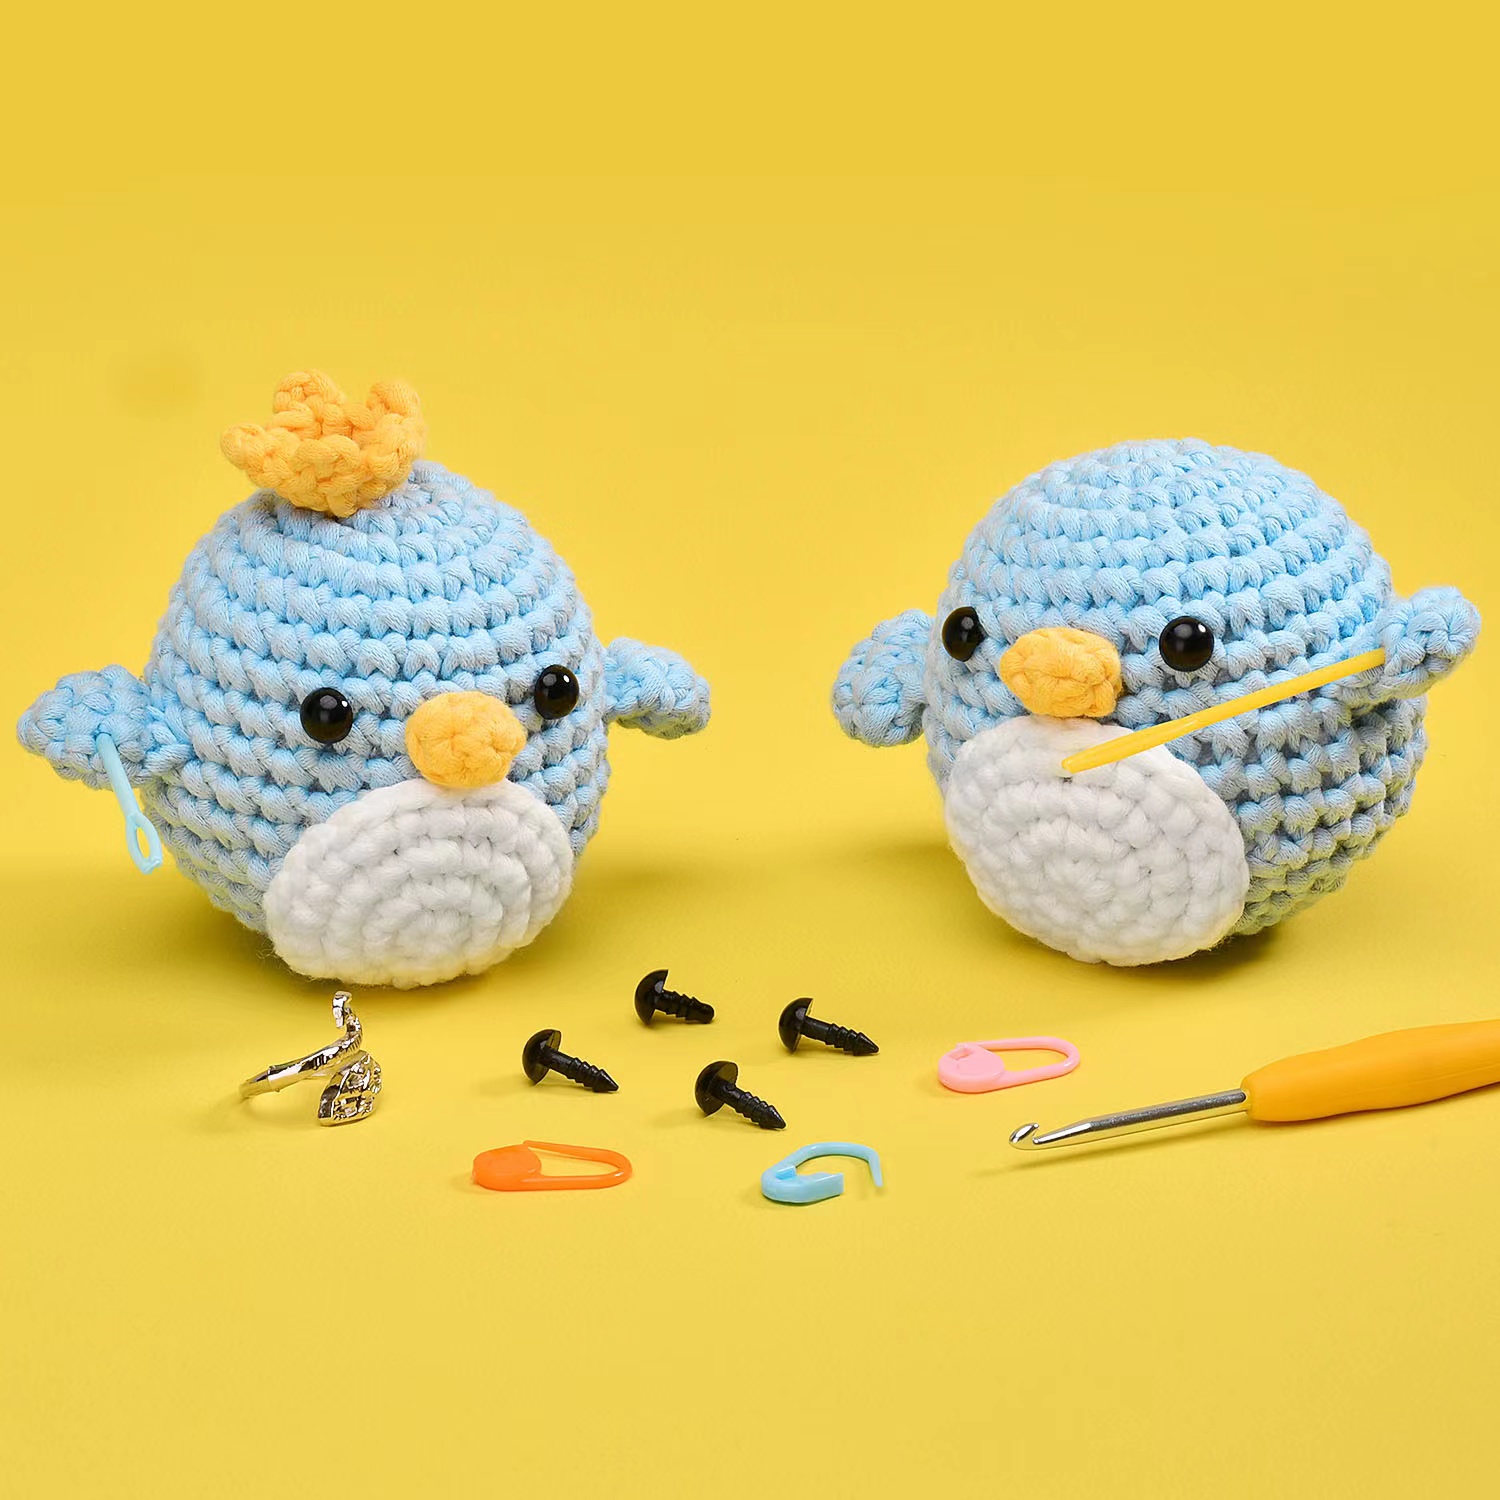 DIY Animal Crochet Kit For Beginners, Penguin Stuffed Toys Gift for Boys  Girls